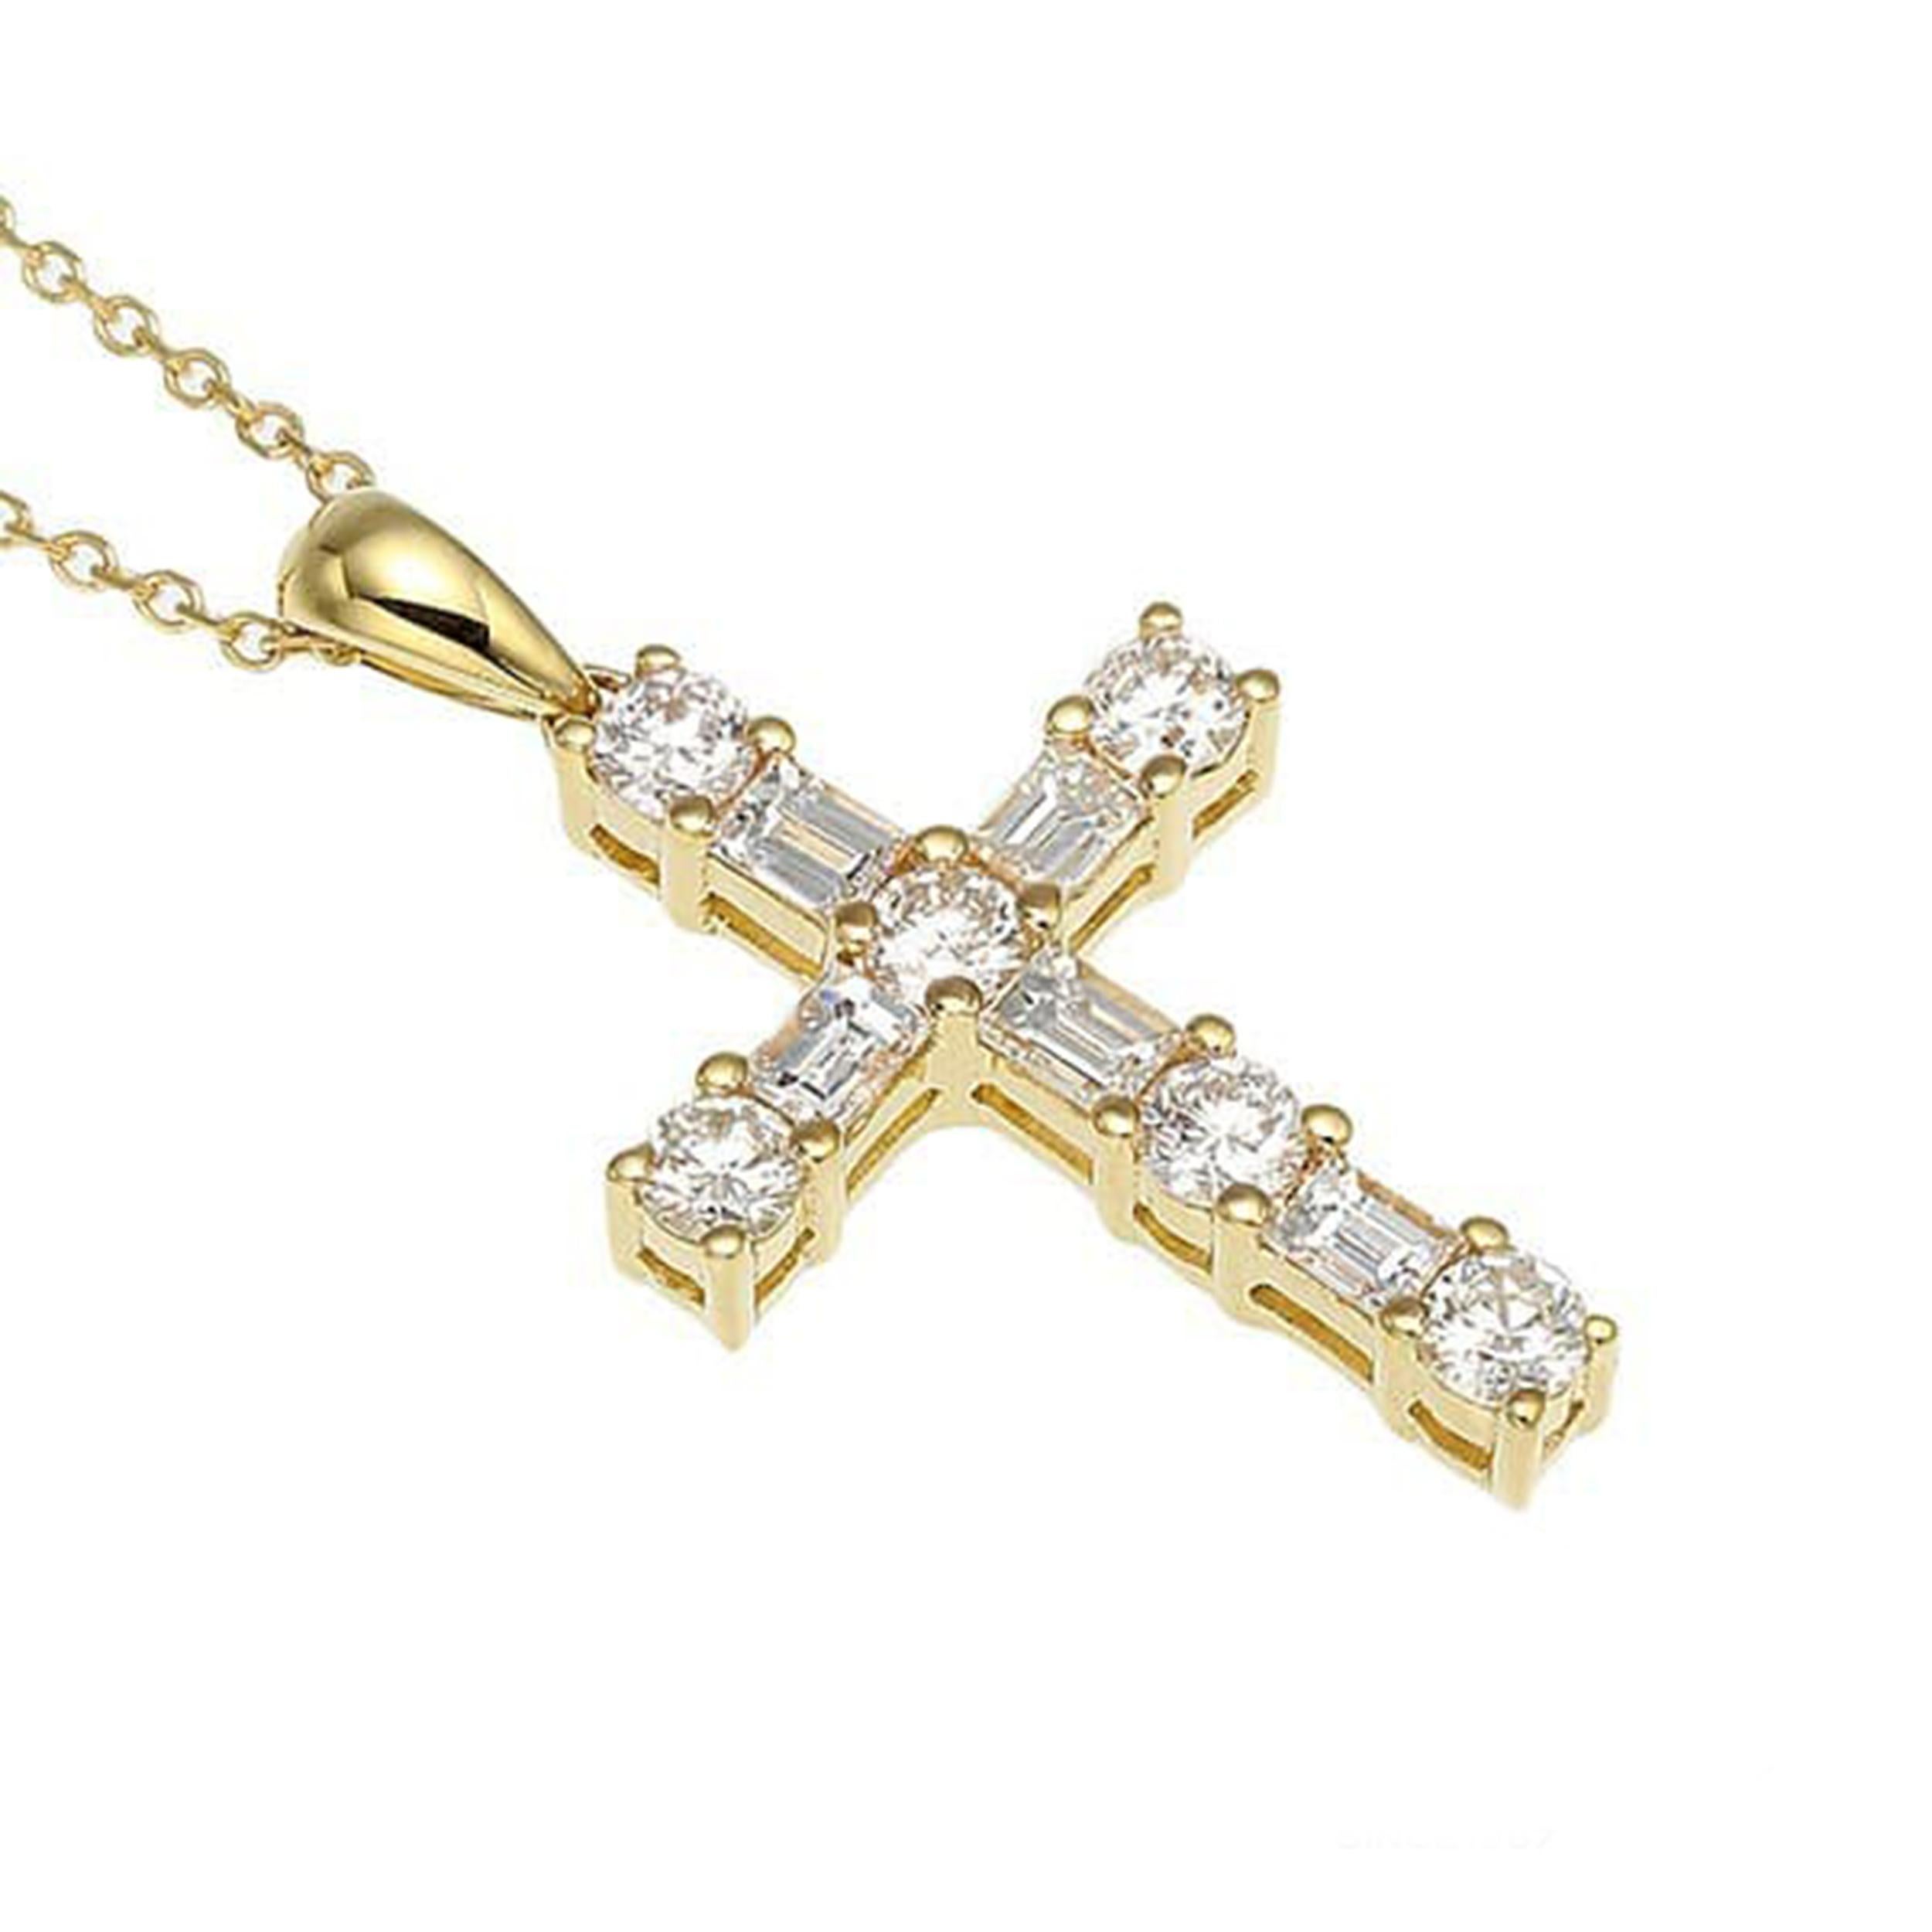 Élevez votre style avec cet élégant collier à pendentif croix en or jaune 18 carats orné de diamants. Réalisée avec des détails exquis, cette pièce intemporelle est ornée d'un diamant étincelant en son centre, pesant 0,36 carat. Le pendentif mesure